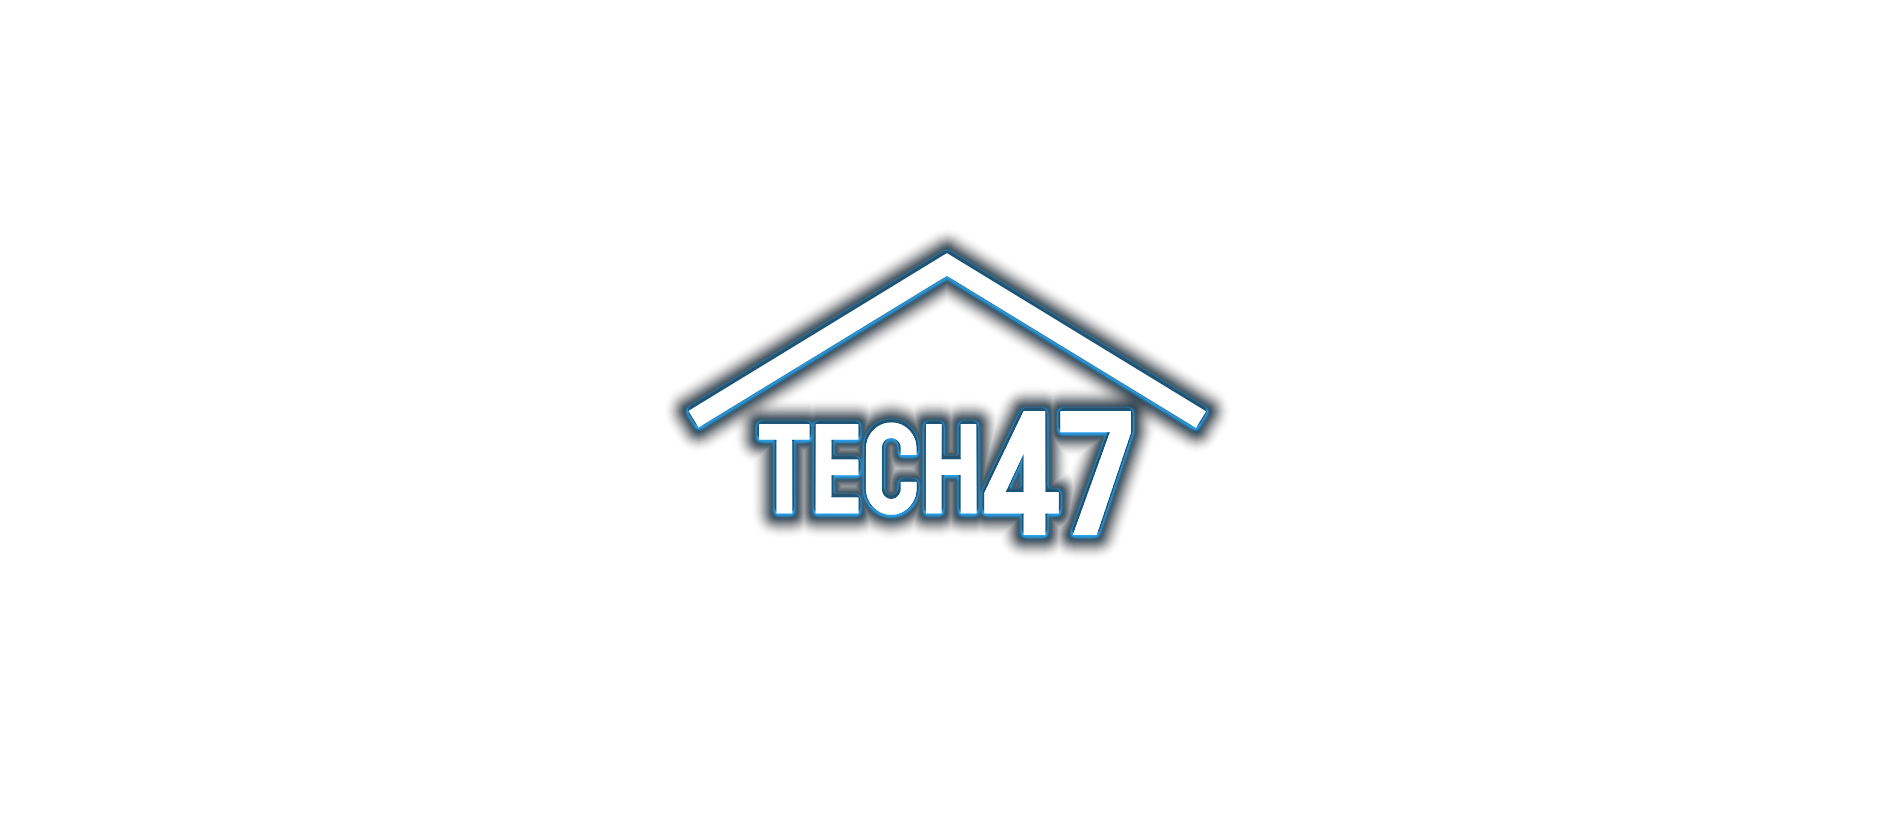 Tech 47